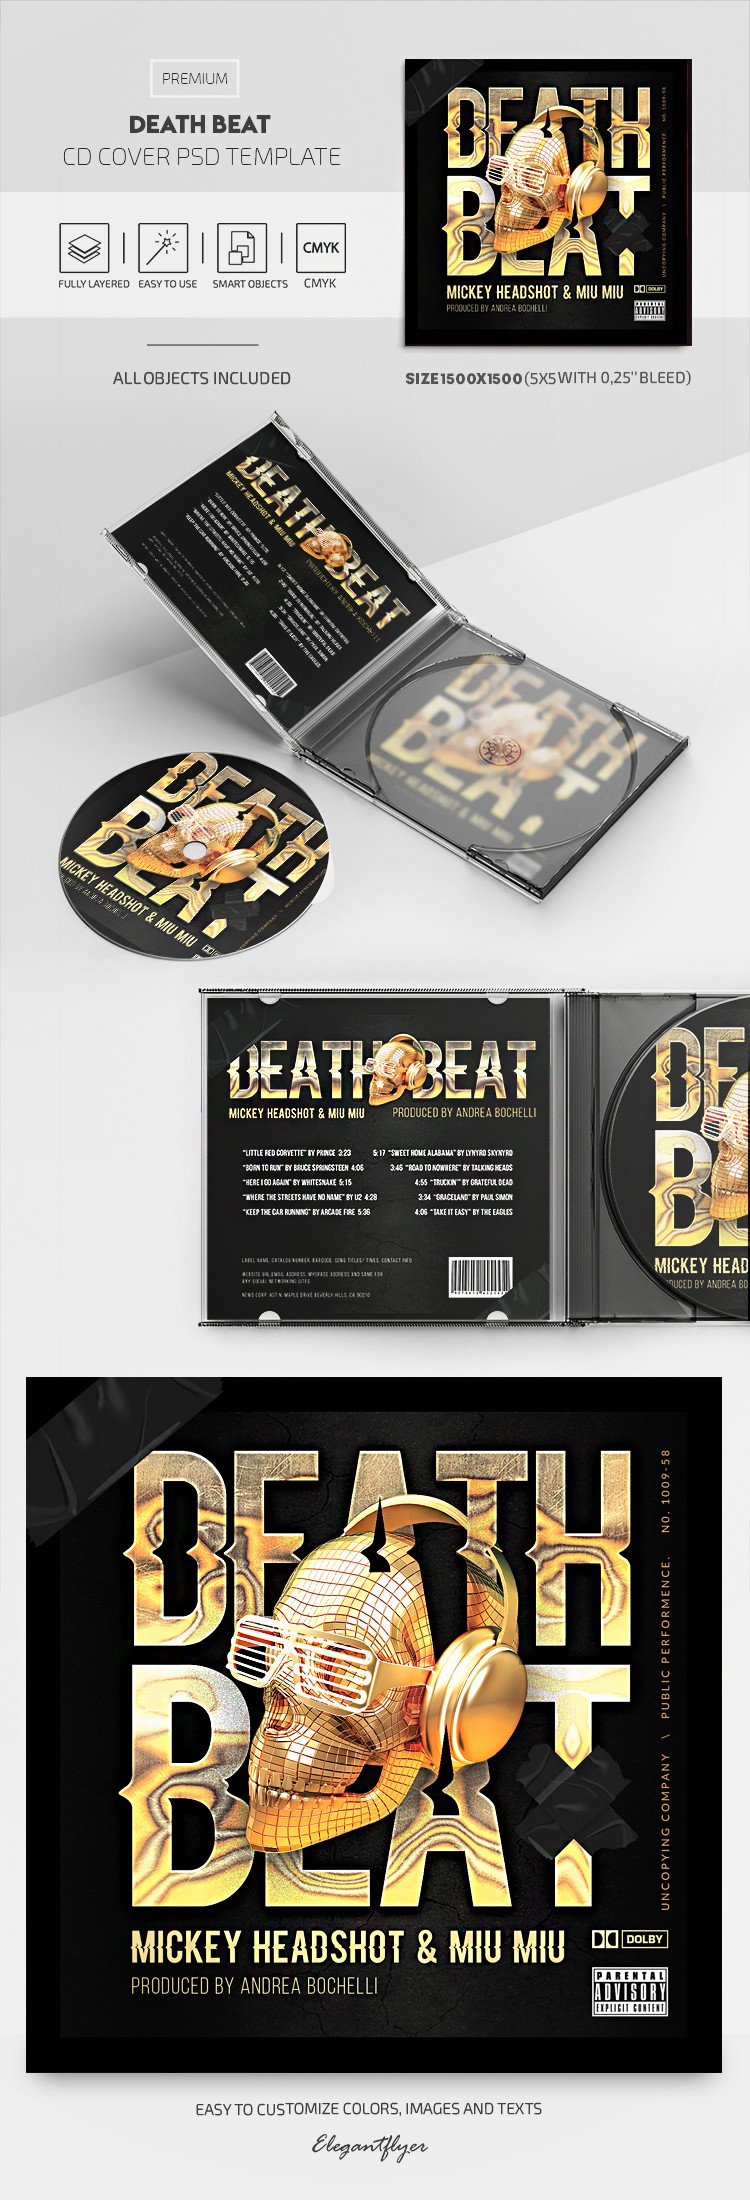 Death Beat Couverture de CD by ElegantFlyer